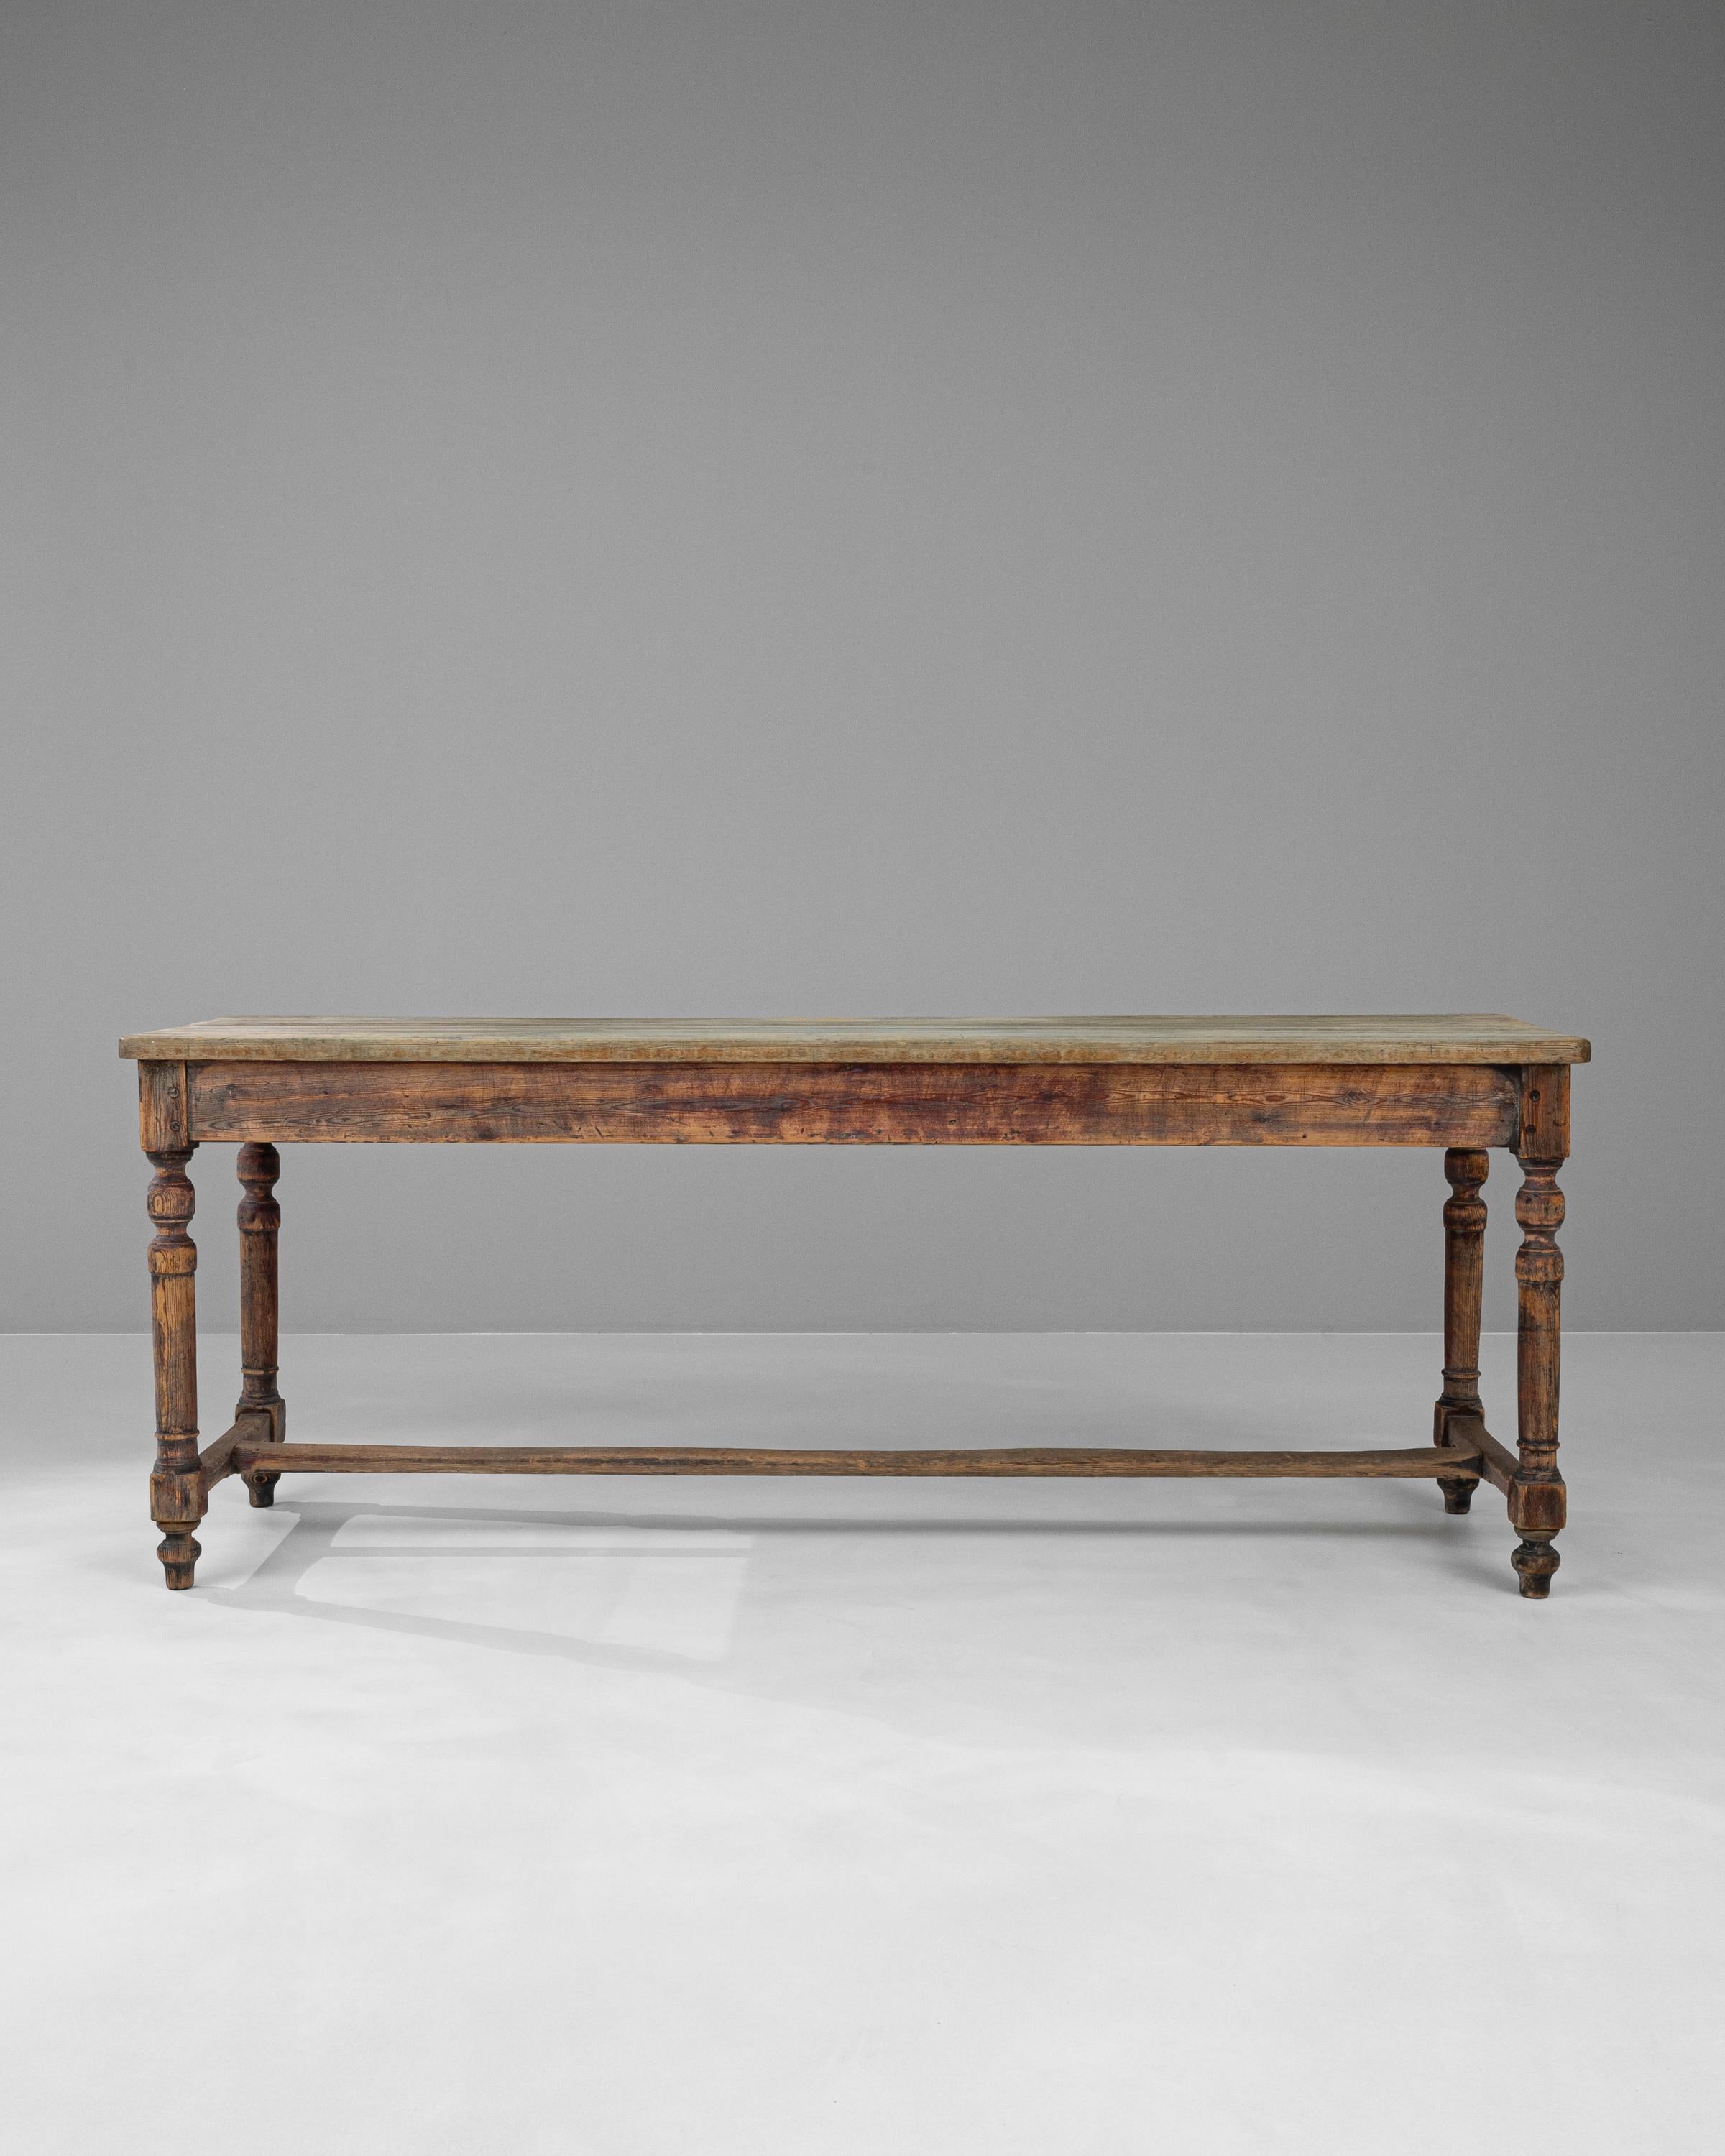 Retrouvez la grandeur du 19ème siècle avec cette table à manger en bois français, un véritable chef-d'œuvre qui fait écho à la splendeur d'époques révolues. Chaque coup d'œil sur cette table révèle la profondeur de son héritage, mis en valeur par